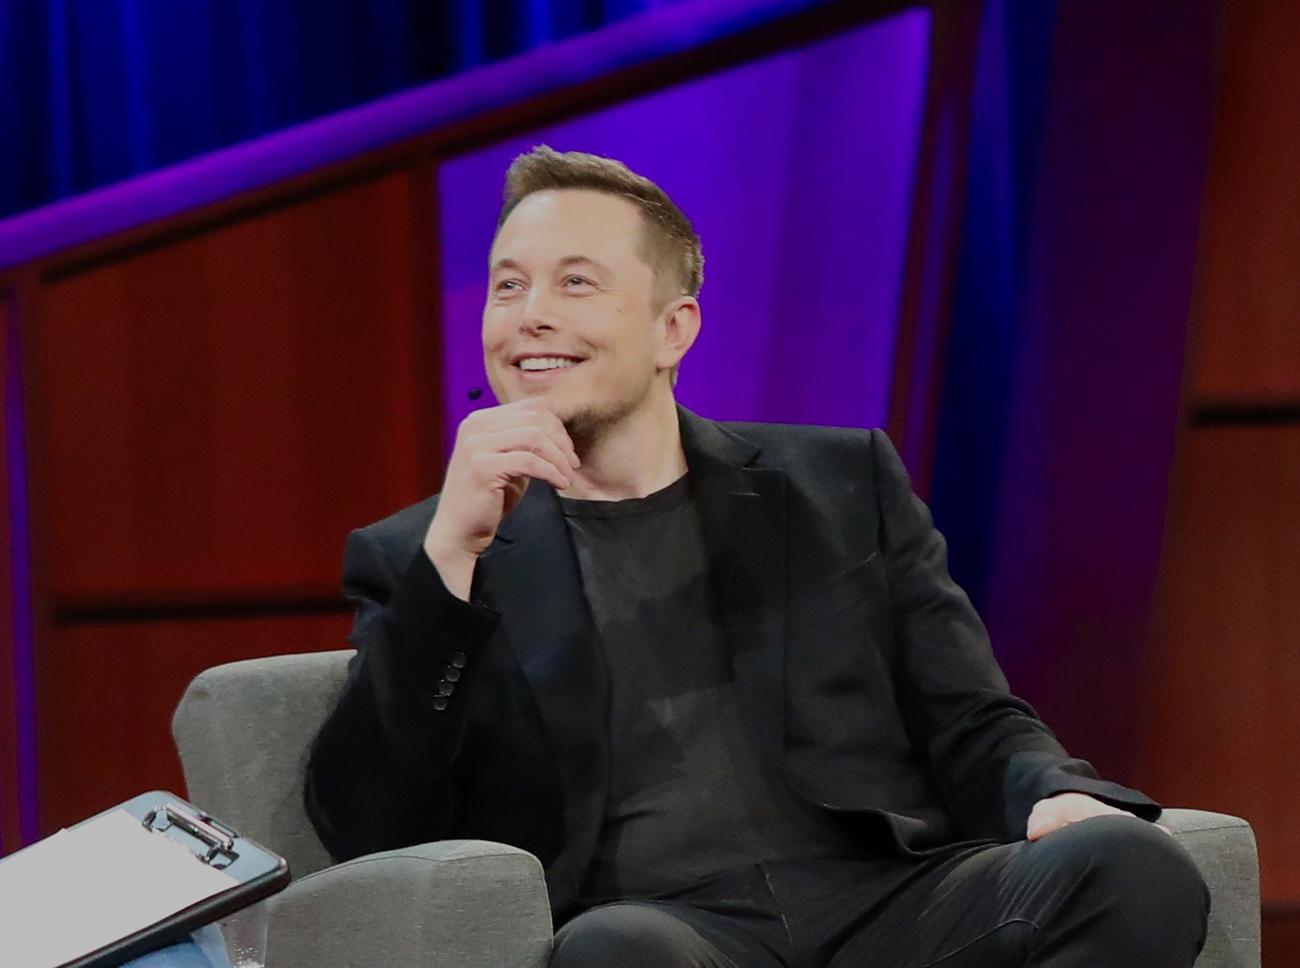 A photograph shows Elon Musk